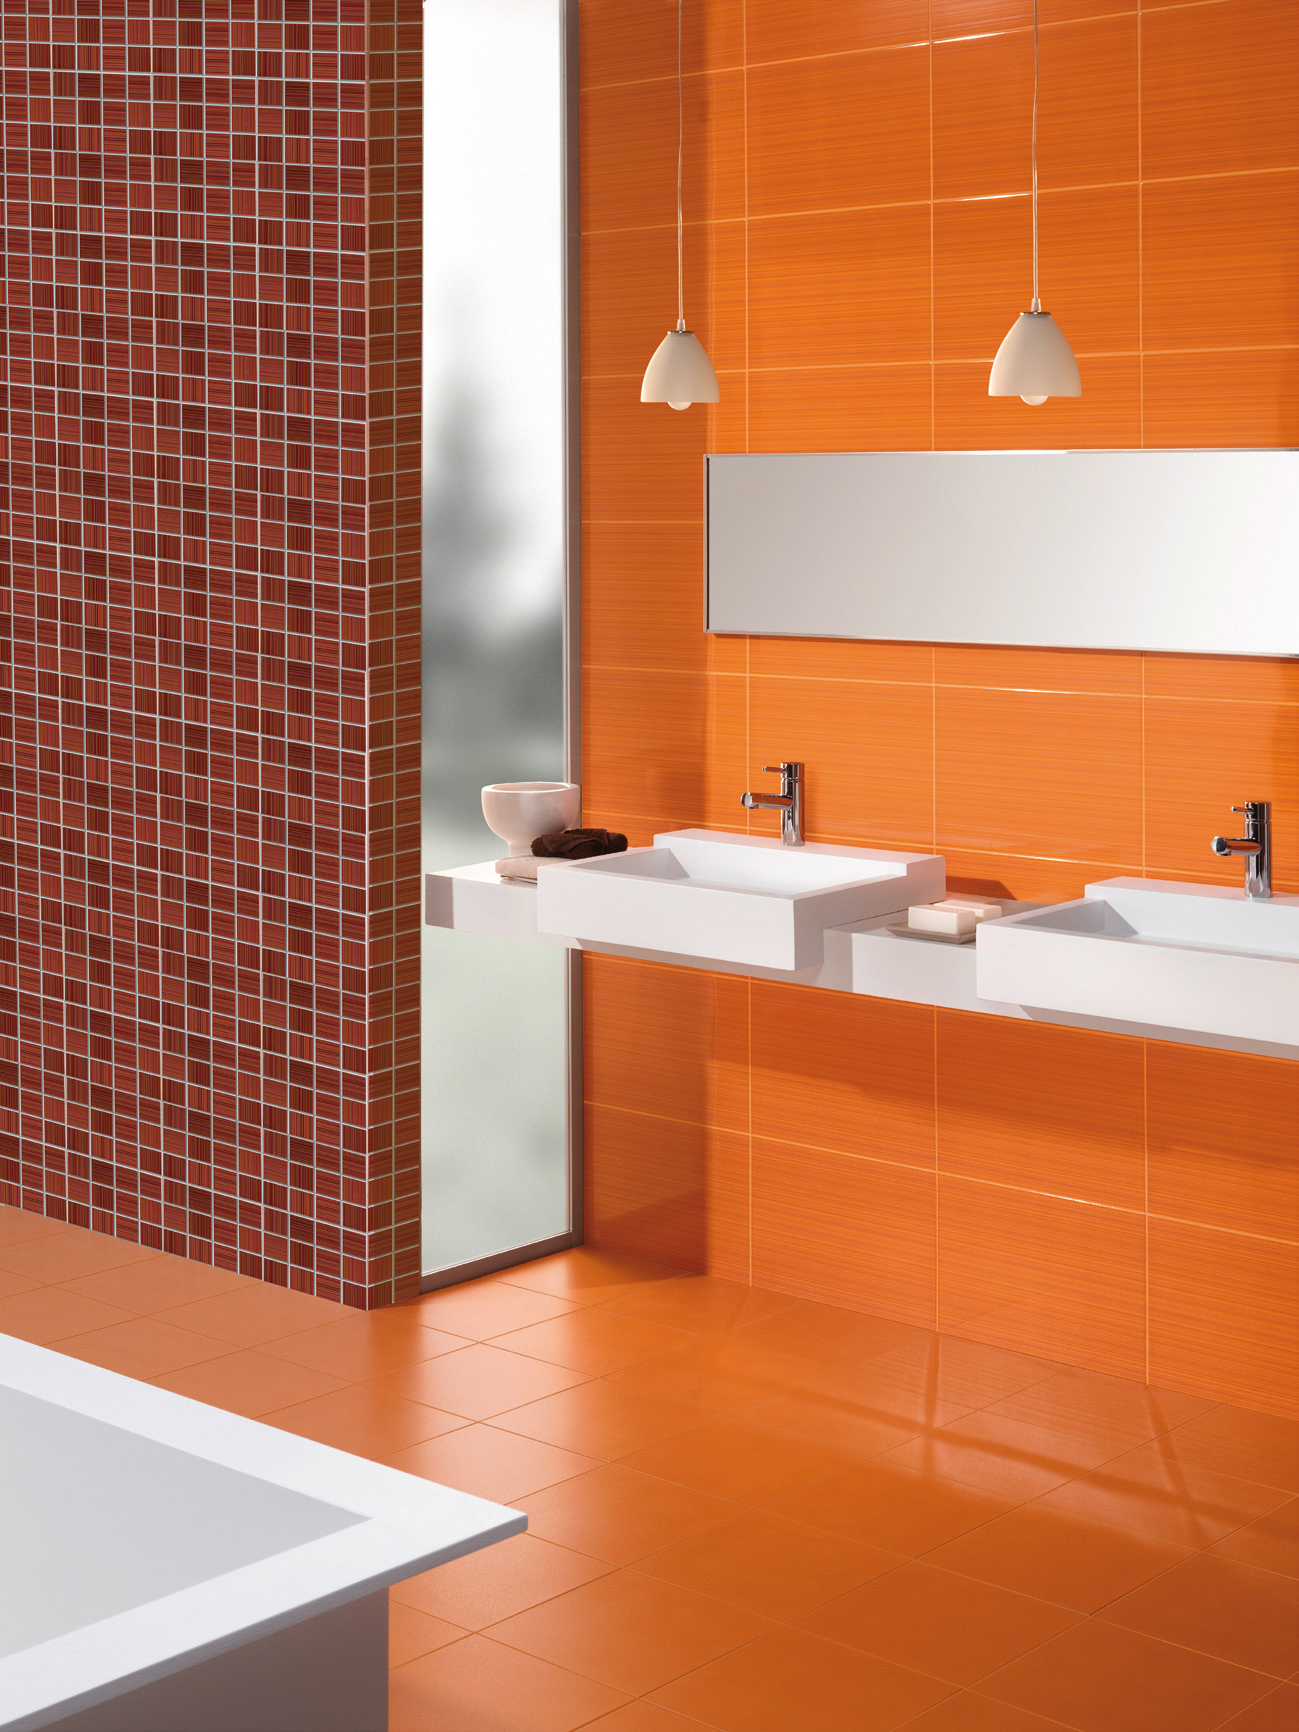 Оранжевый, коричневый и белый цвета в ванной